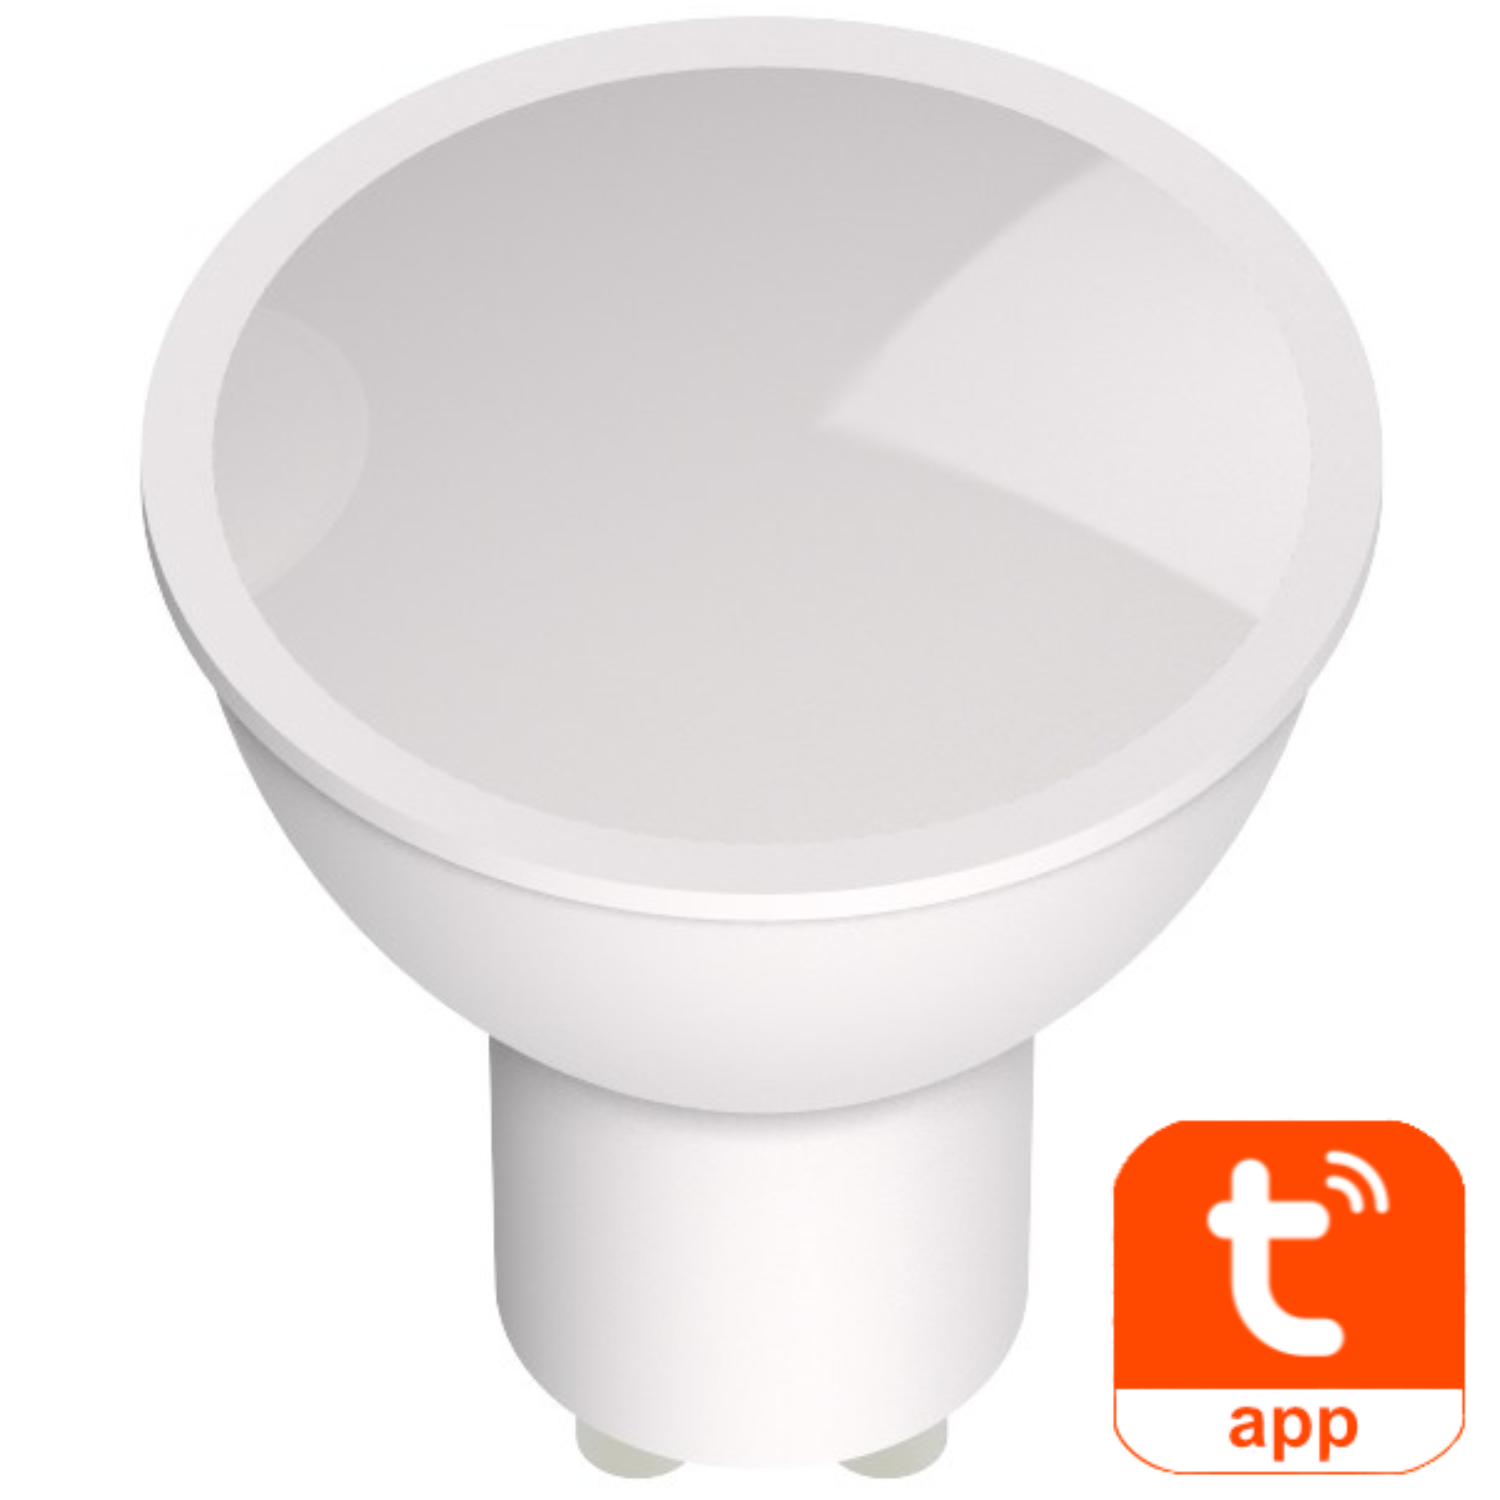 Smart ledlamp - Avide